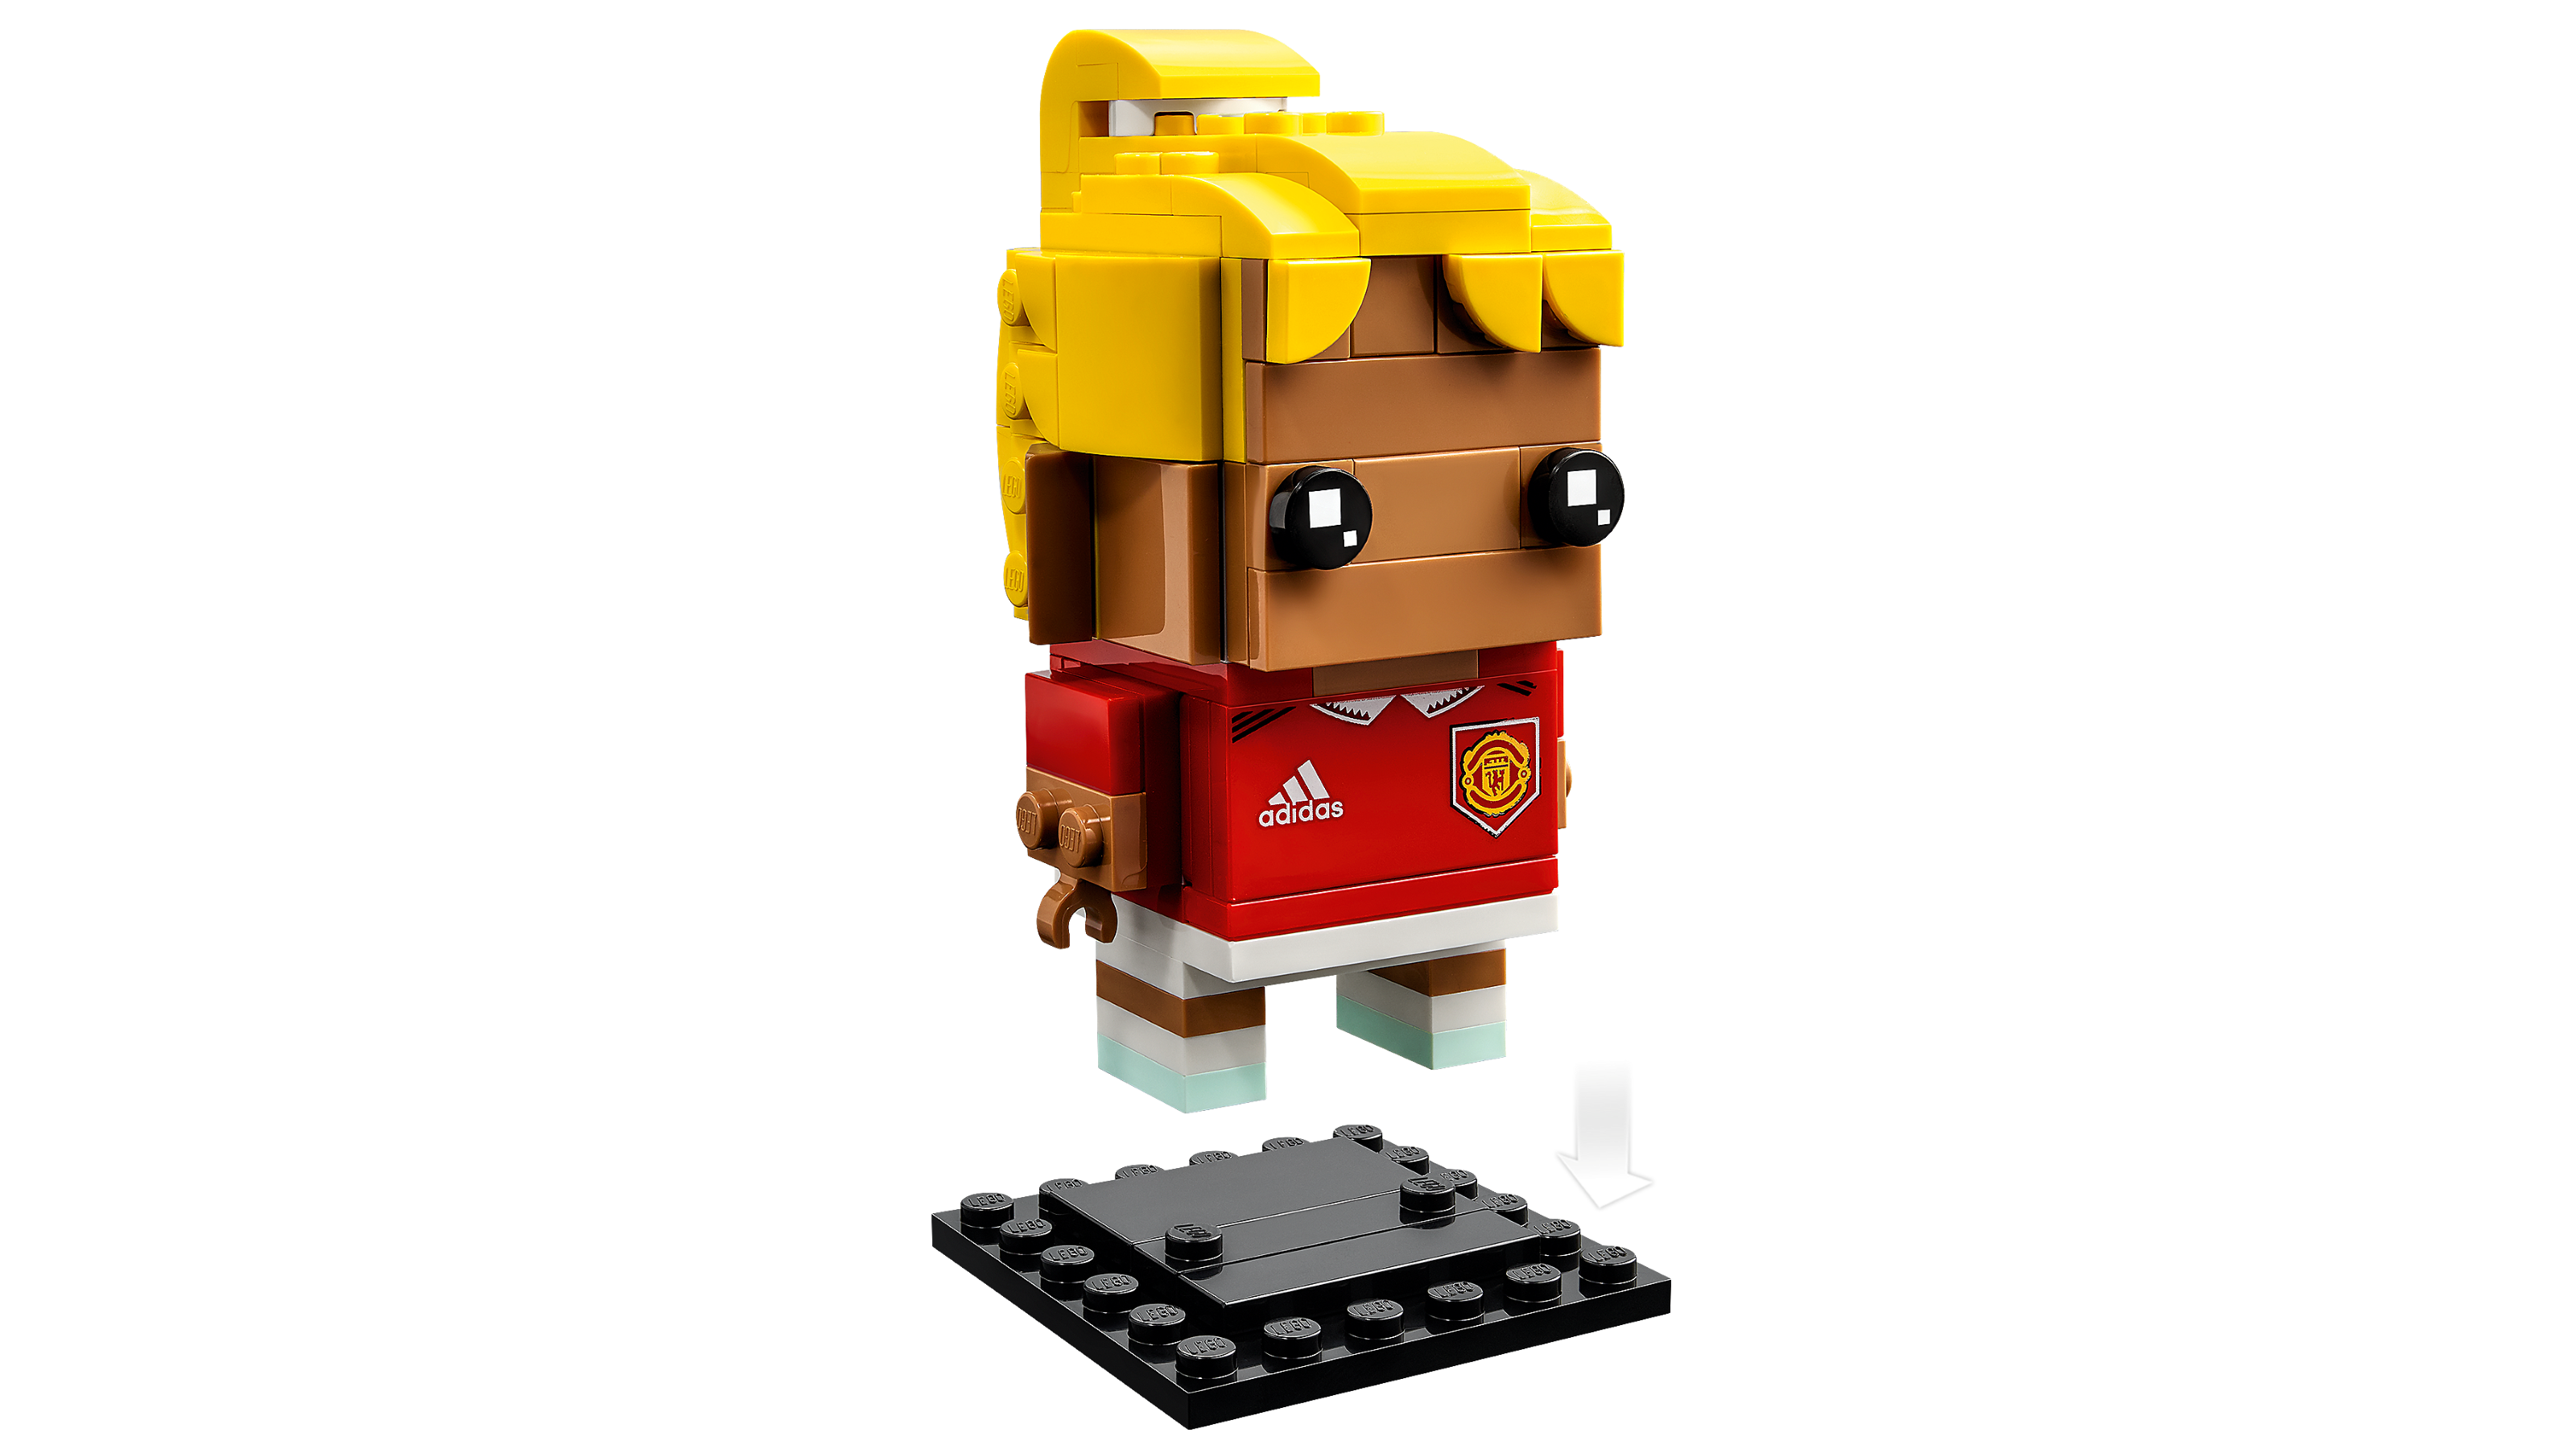 nikkel spille klaver at retfærdiggøre Klods mig – Manchester United 40541 | BrickHeadz | Officiel LEGO® Shop DK